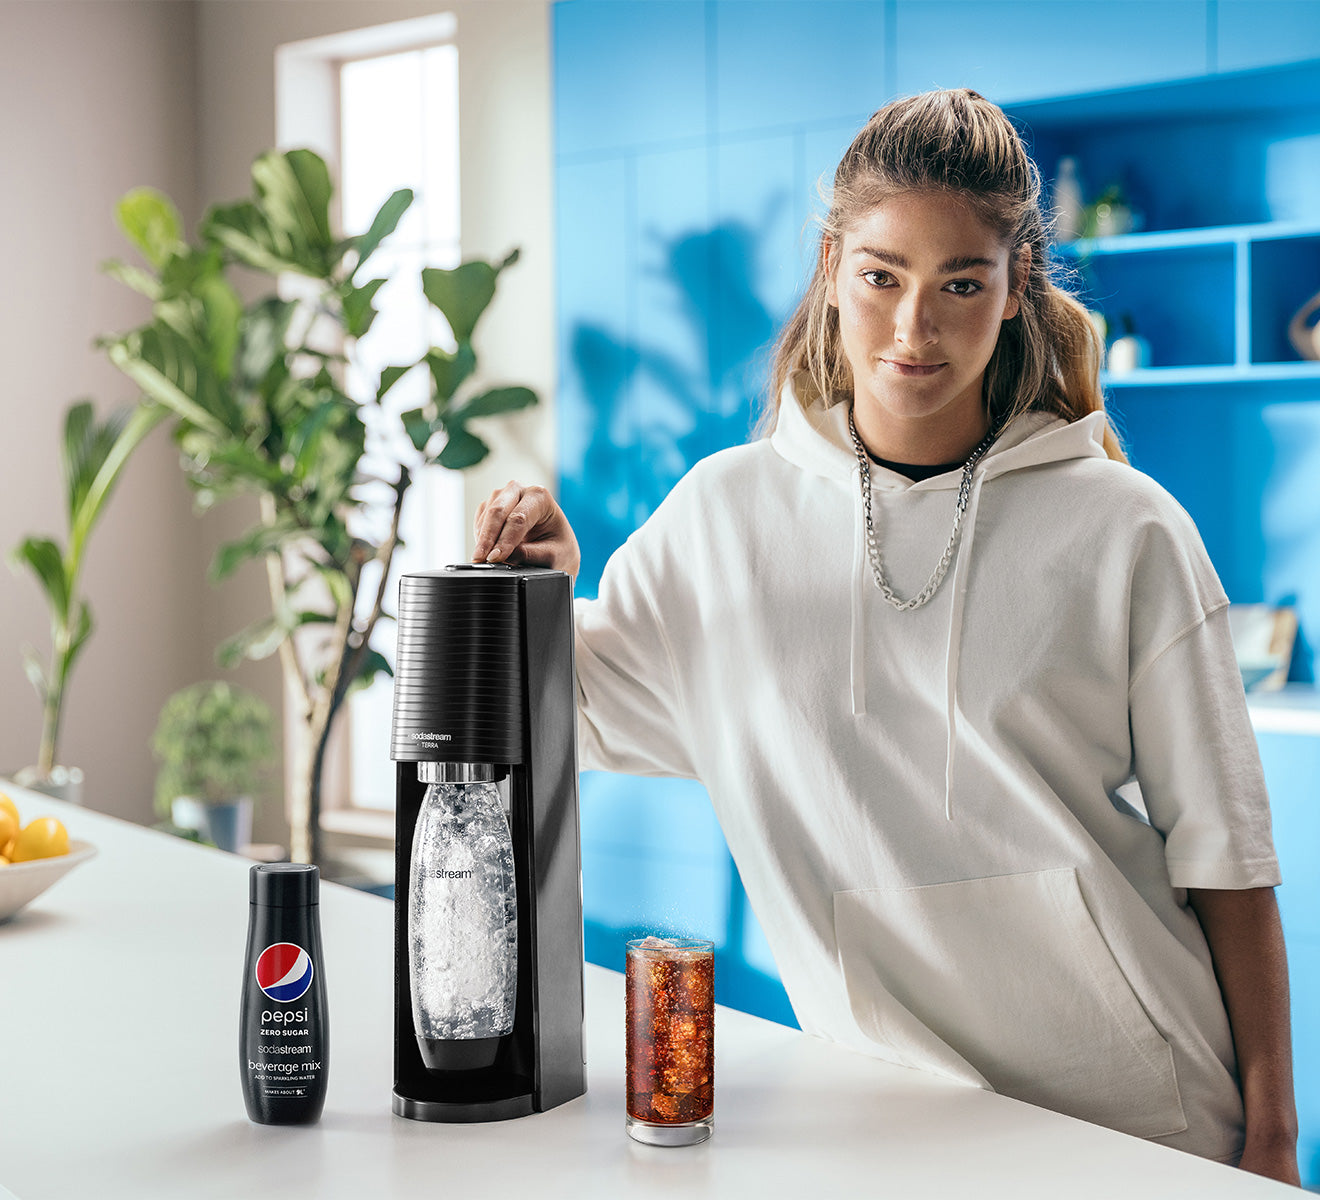 Sodastream : Concentrés > Pepsi & 7up > 2x Sirop Pepsi 440ml